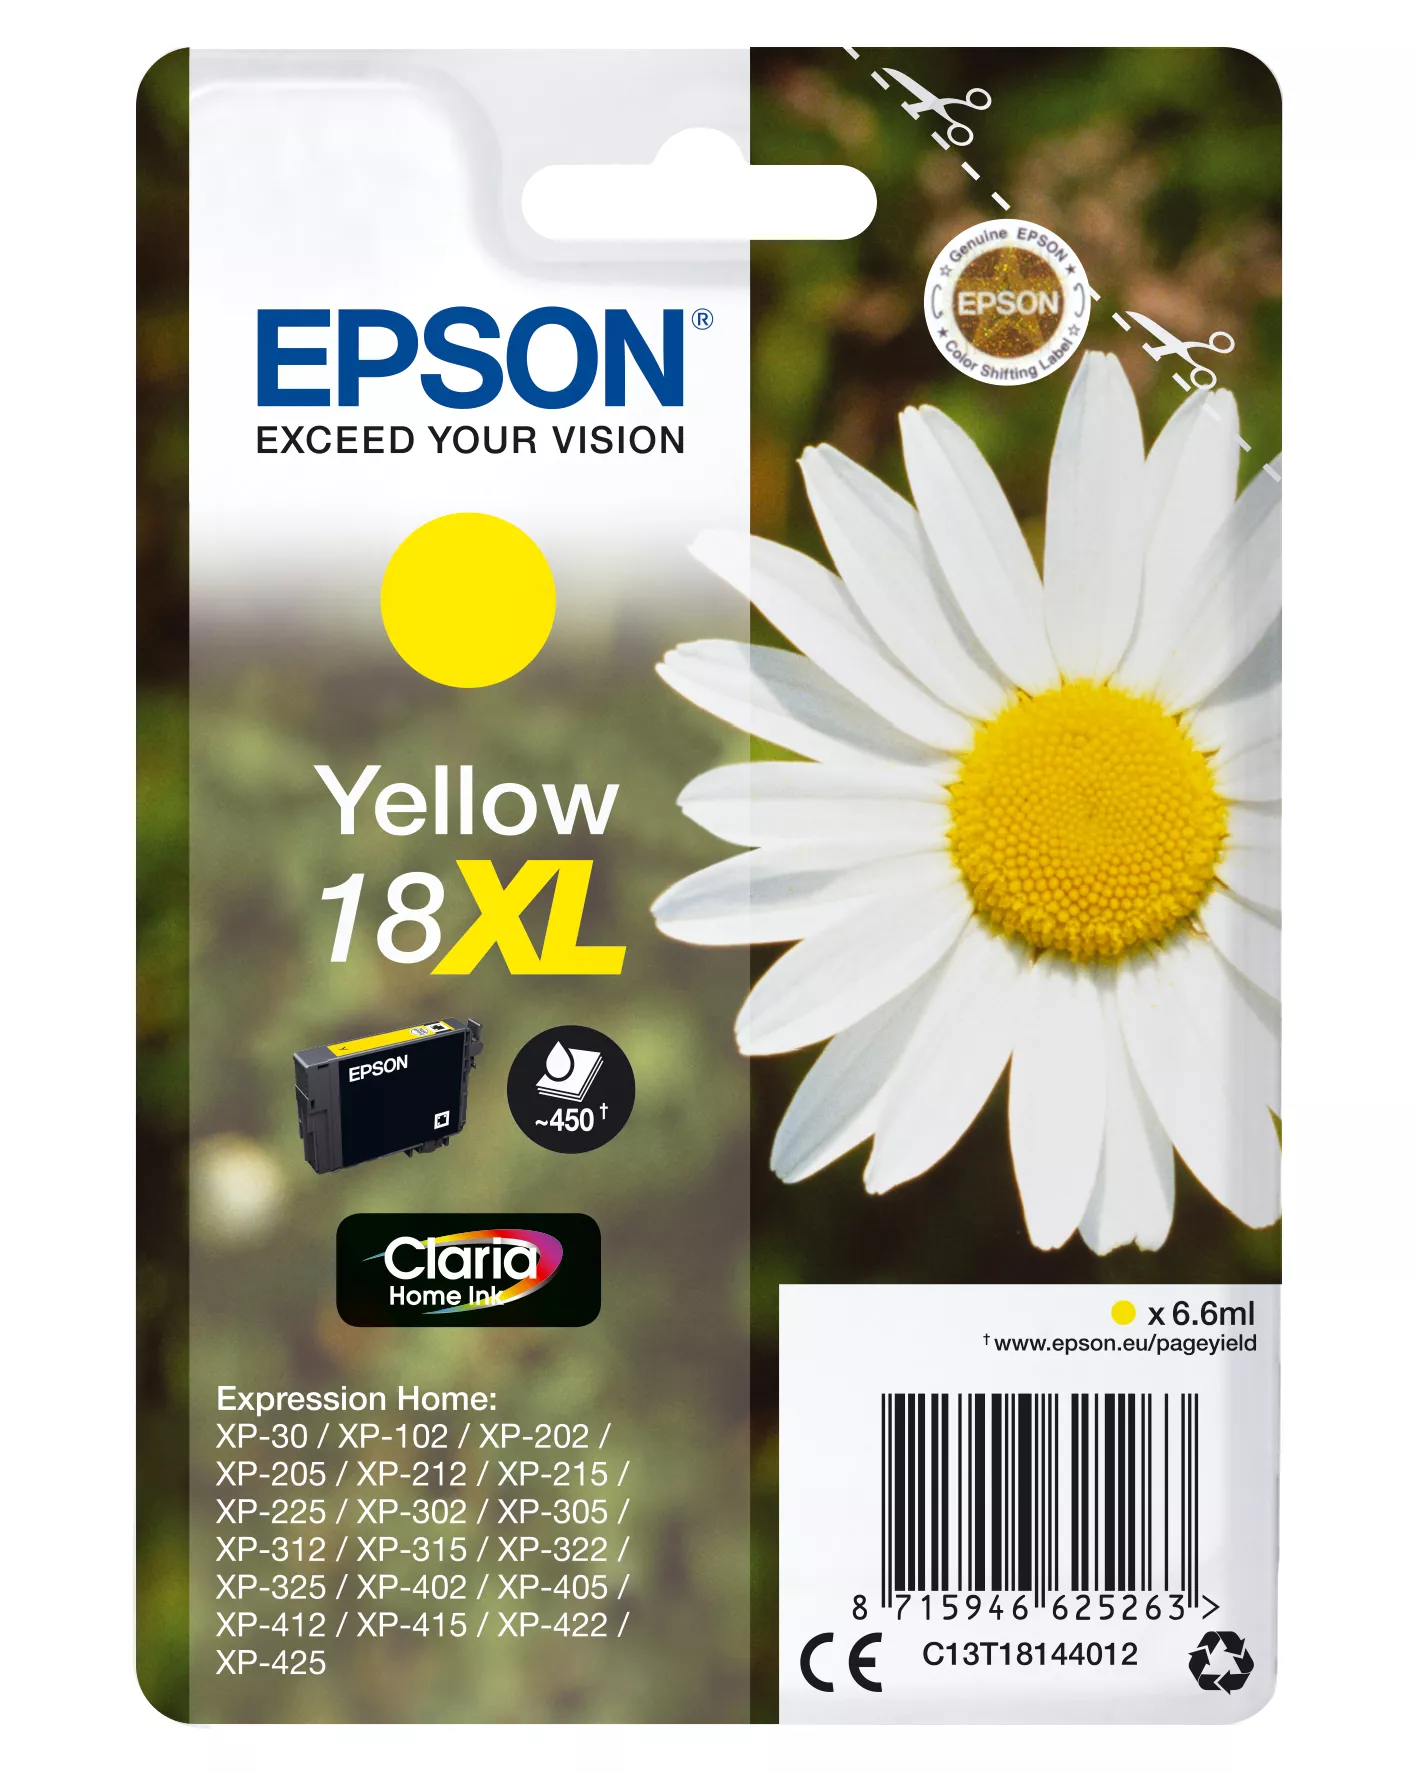 Achat EPSON 18XL cartouche dencre jaune haute capacité 6.6ml au meilleur prix